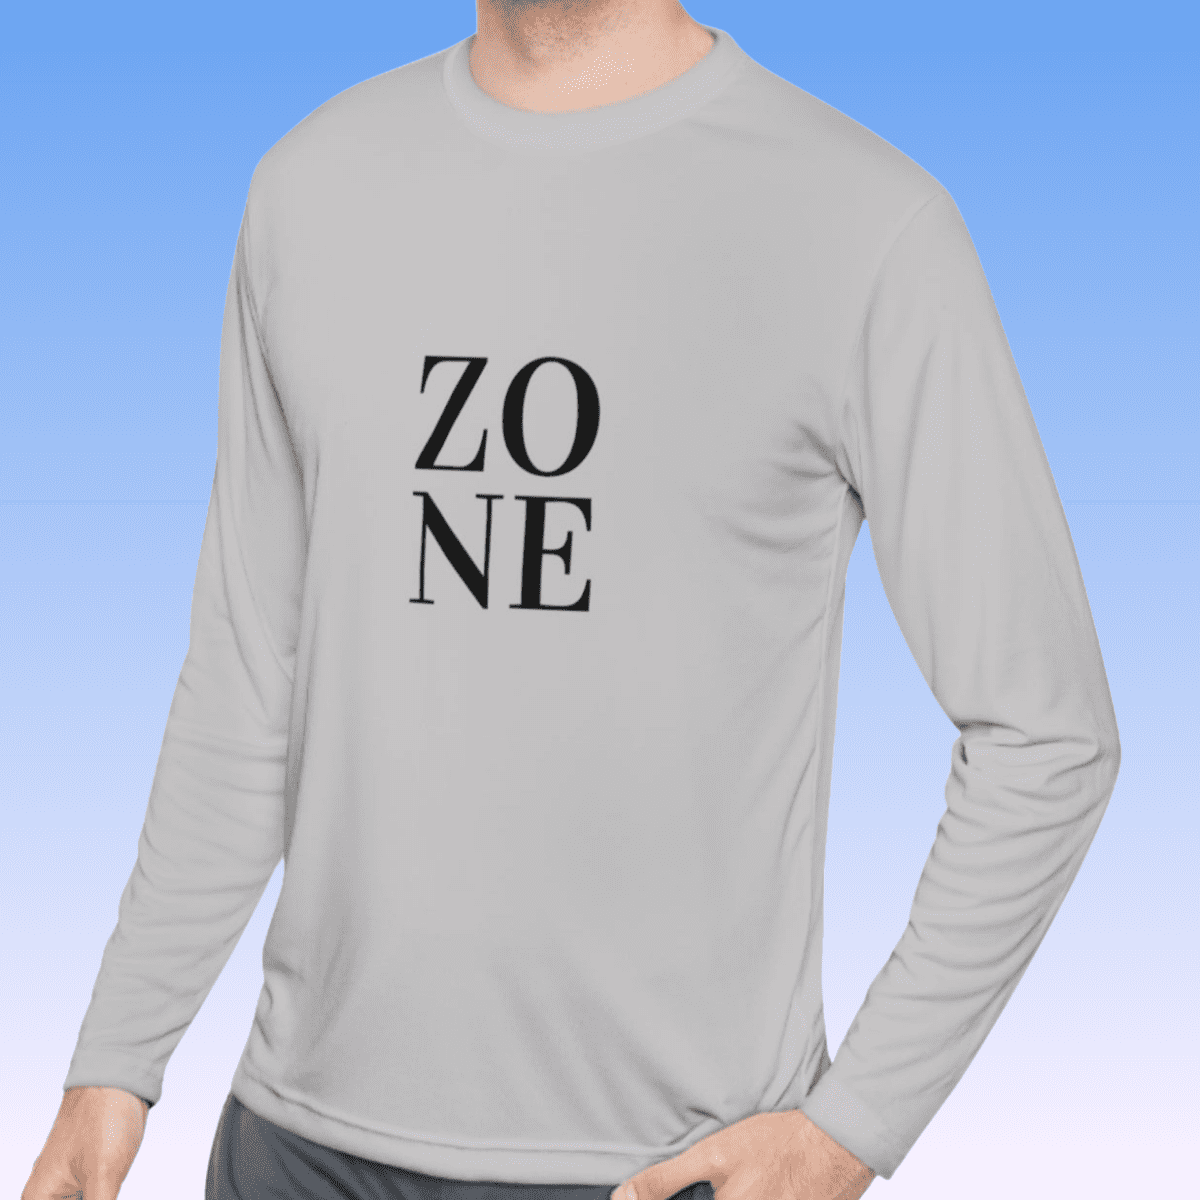 Silver Men's Zone Black Long Sleeve Moisture-Wicking Tee